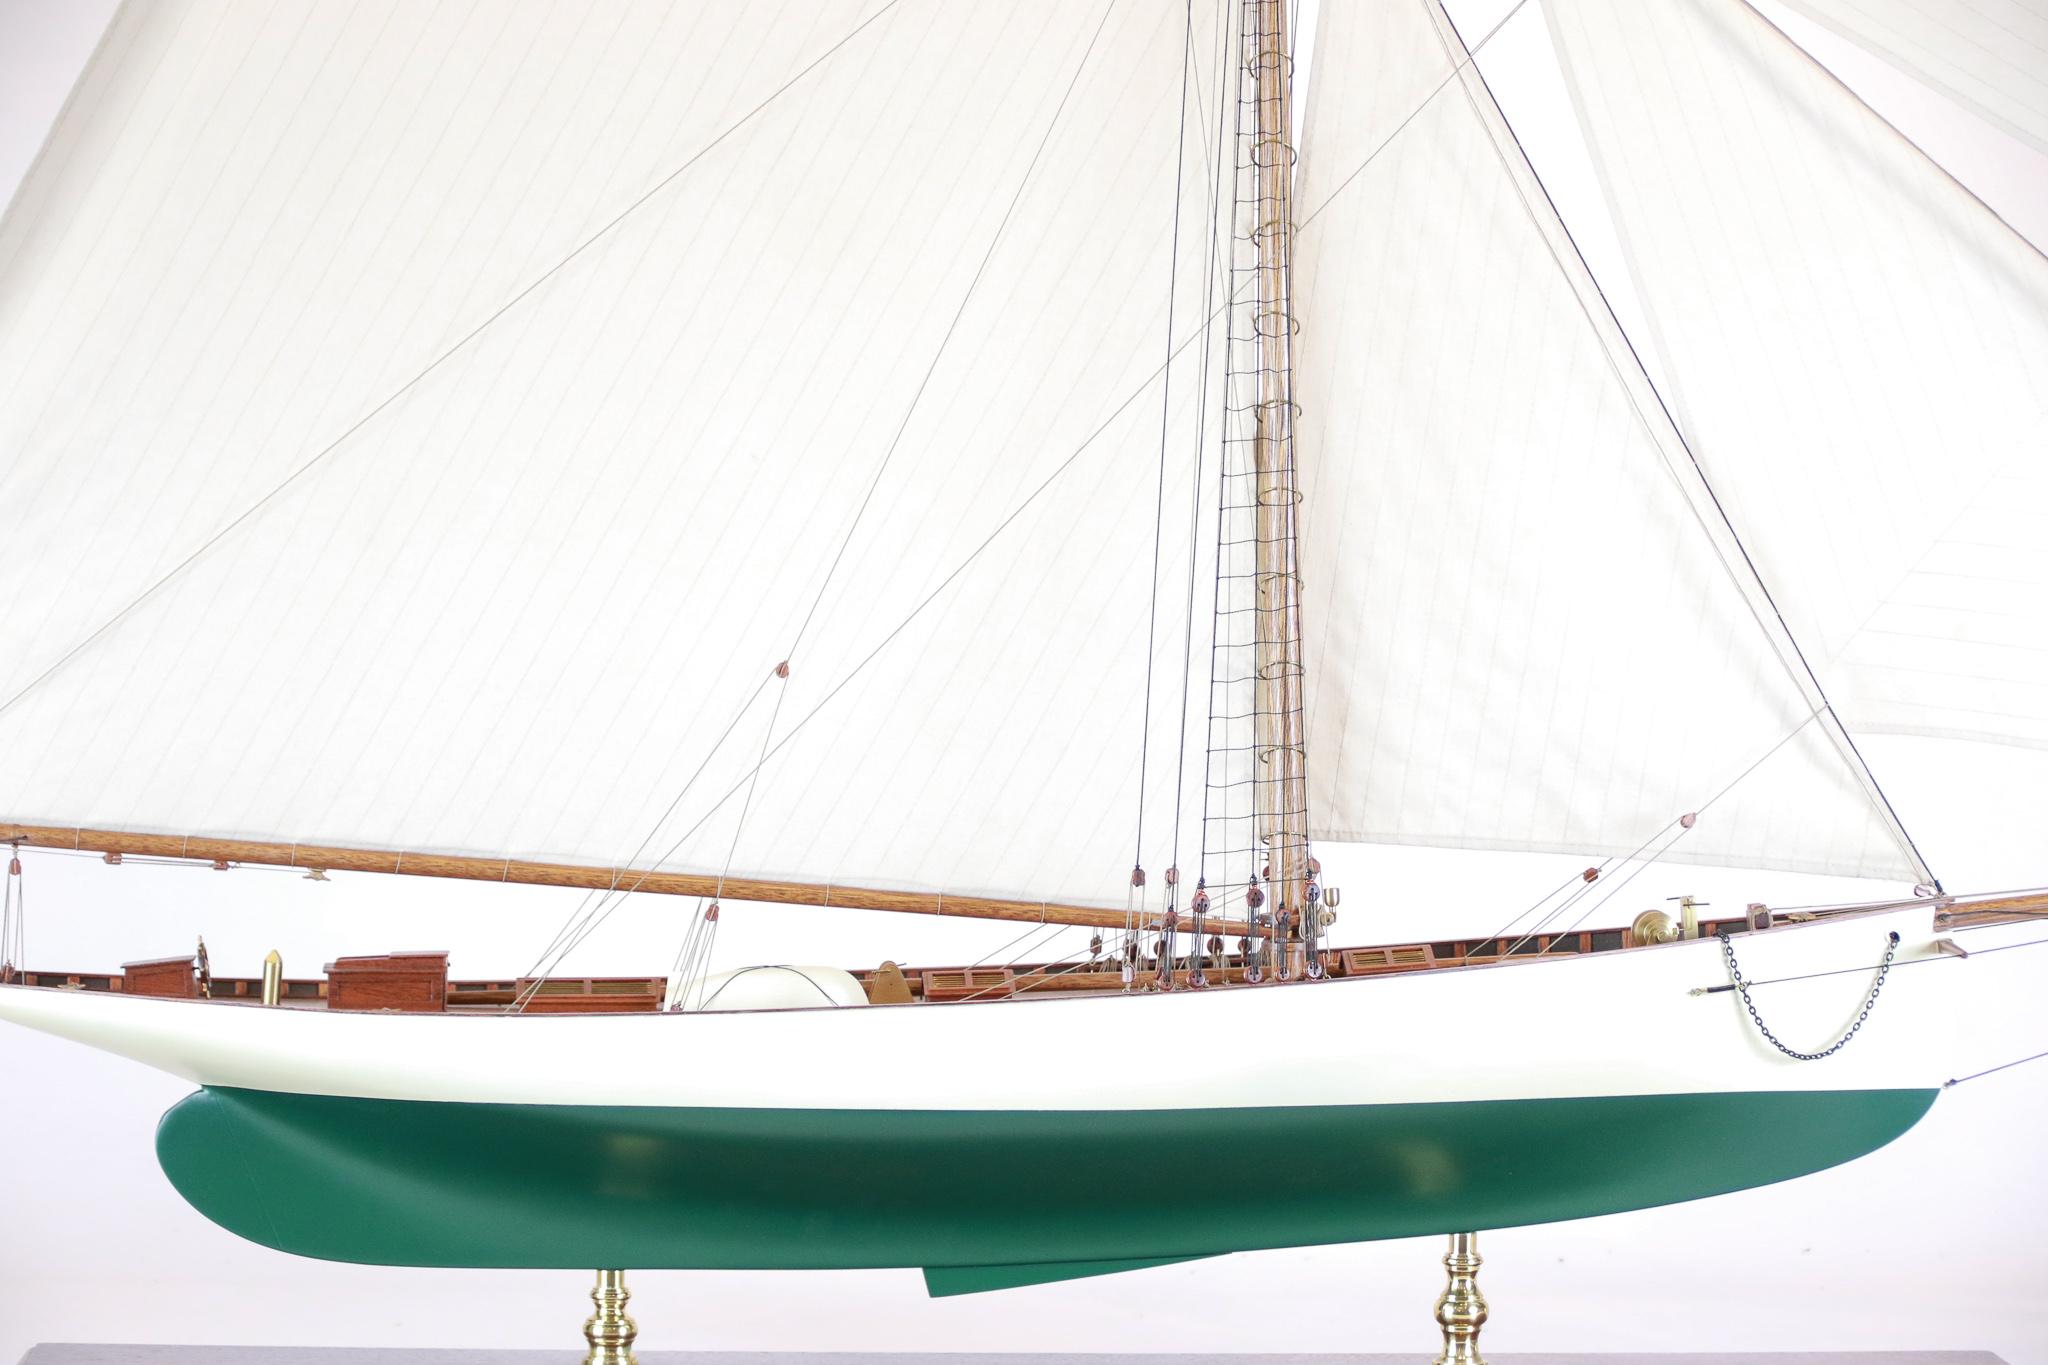 Modèle précoce de l'America's Cup du Puritan de 1885. Le Puritan a été conçu par Edward Burgess et construit au chantier naval Lawley à Boston. Puritan appartenait à John Malcolm Forbes, le yacht qu'il a quitté lorsqu'il a battu le yacht britannique